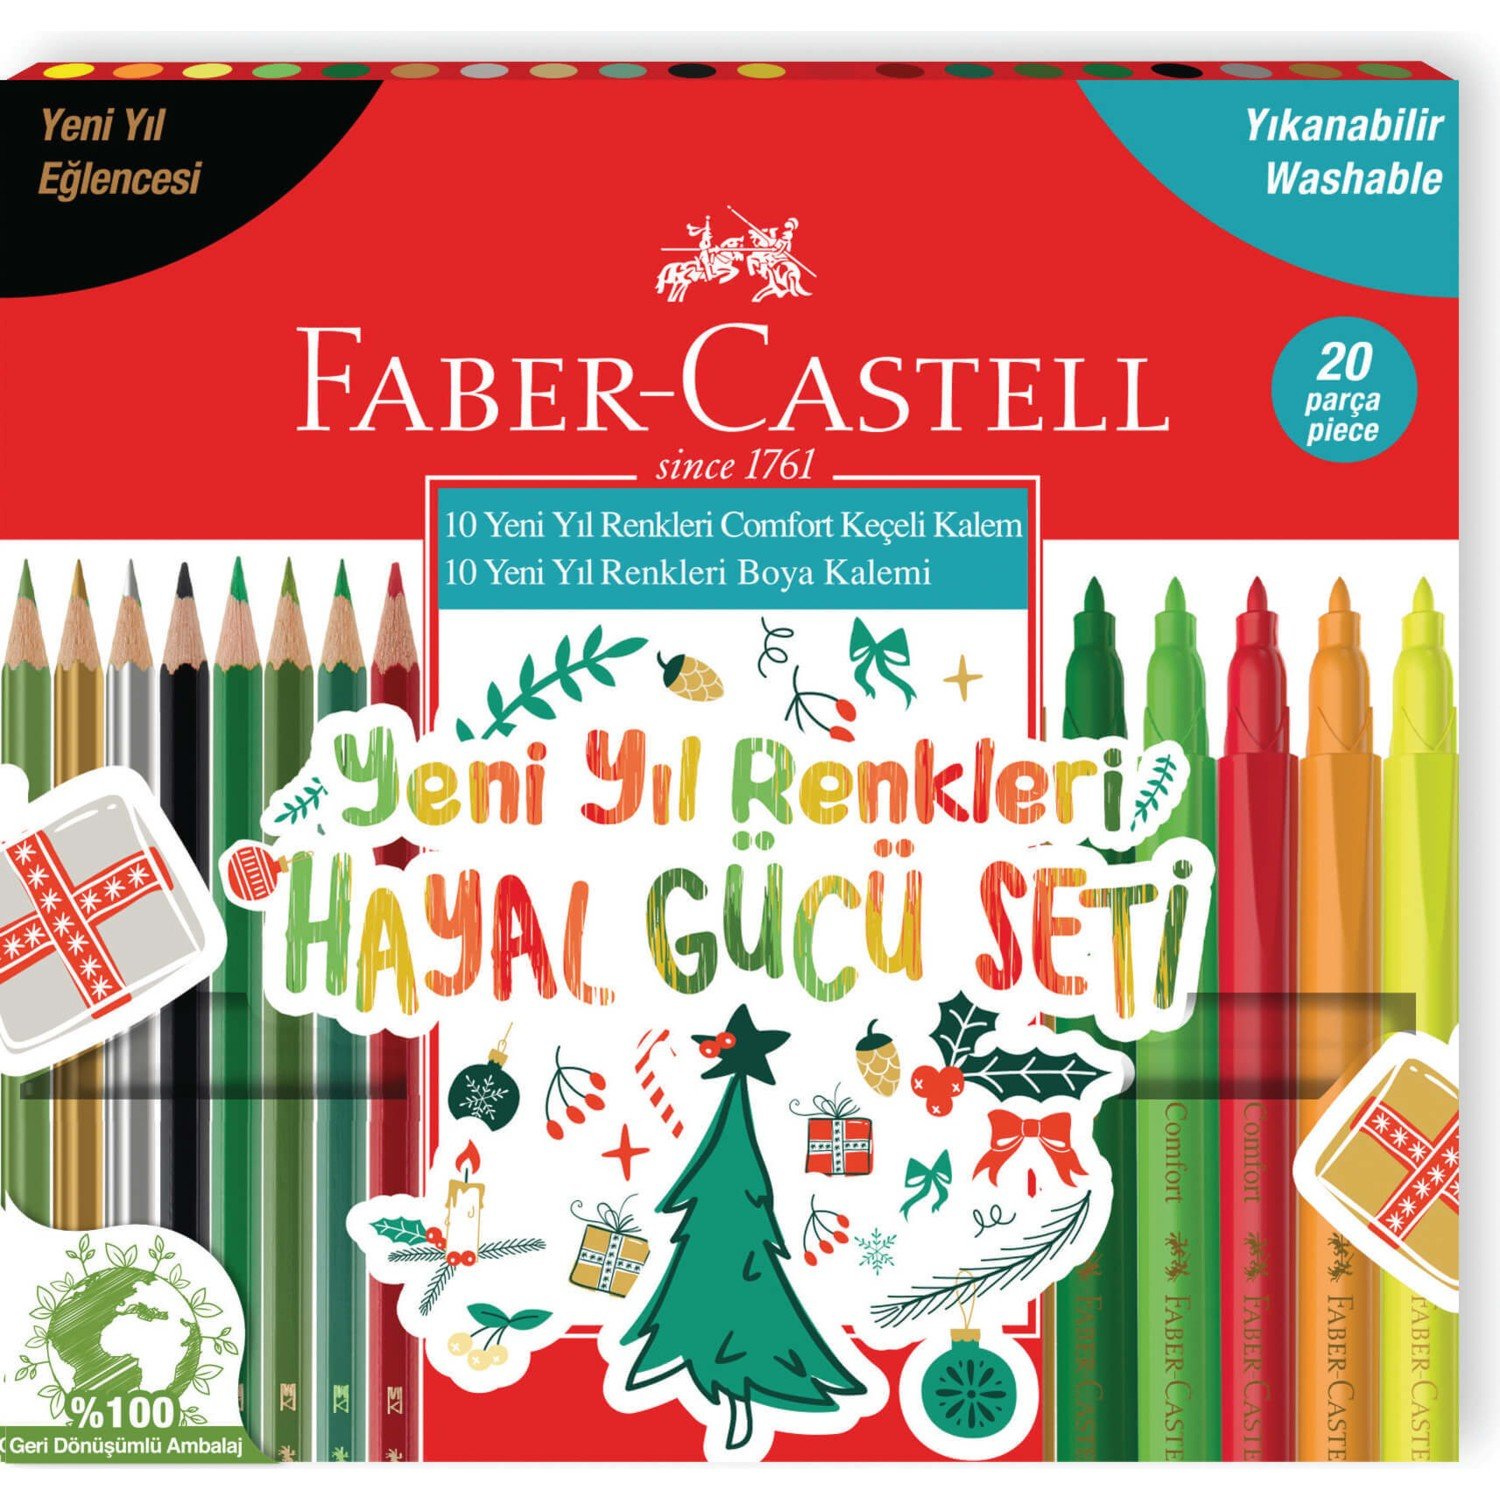 Faber-Castell Yeni Yıl Renkleri Hayal Gücü Seti 20'li